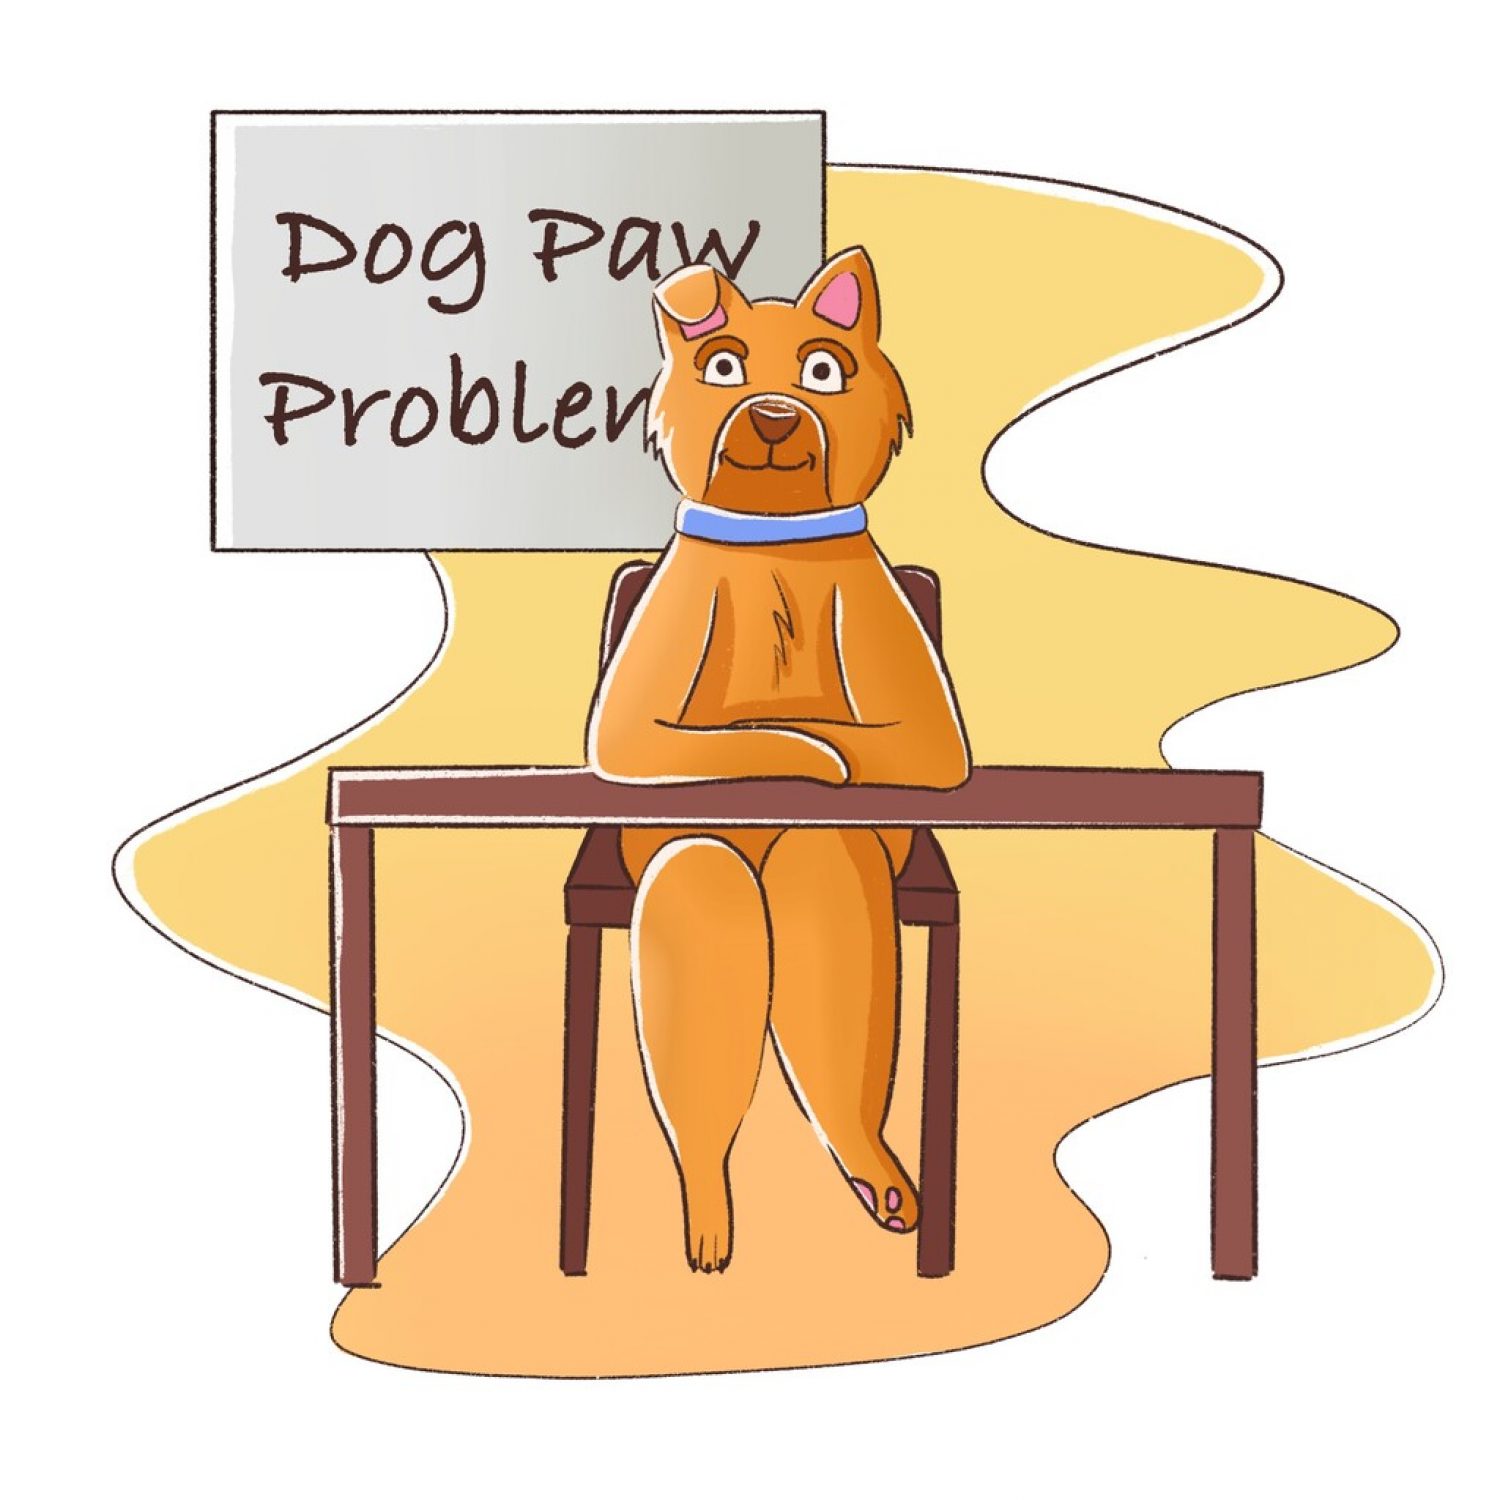 Dog Paw Problems Explained